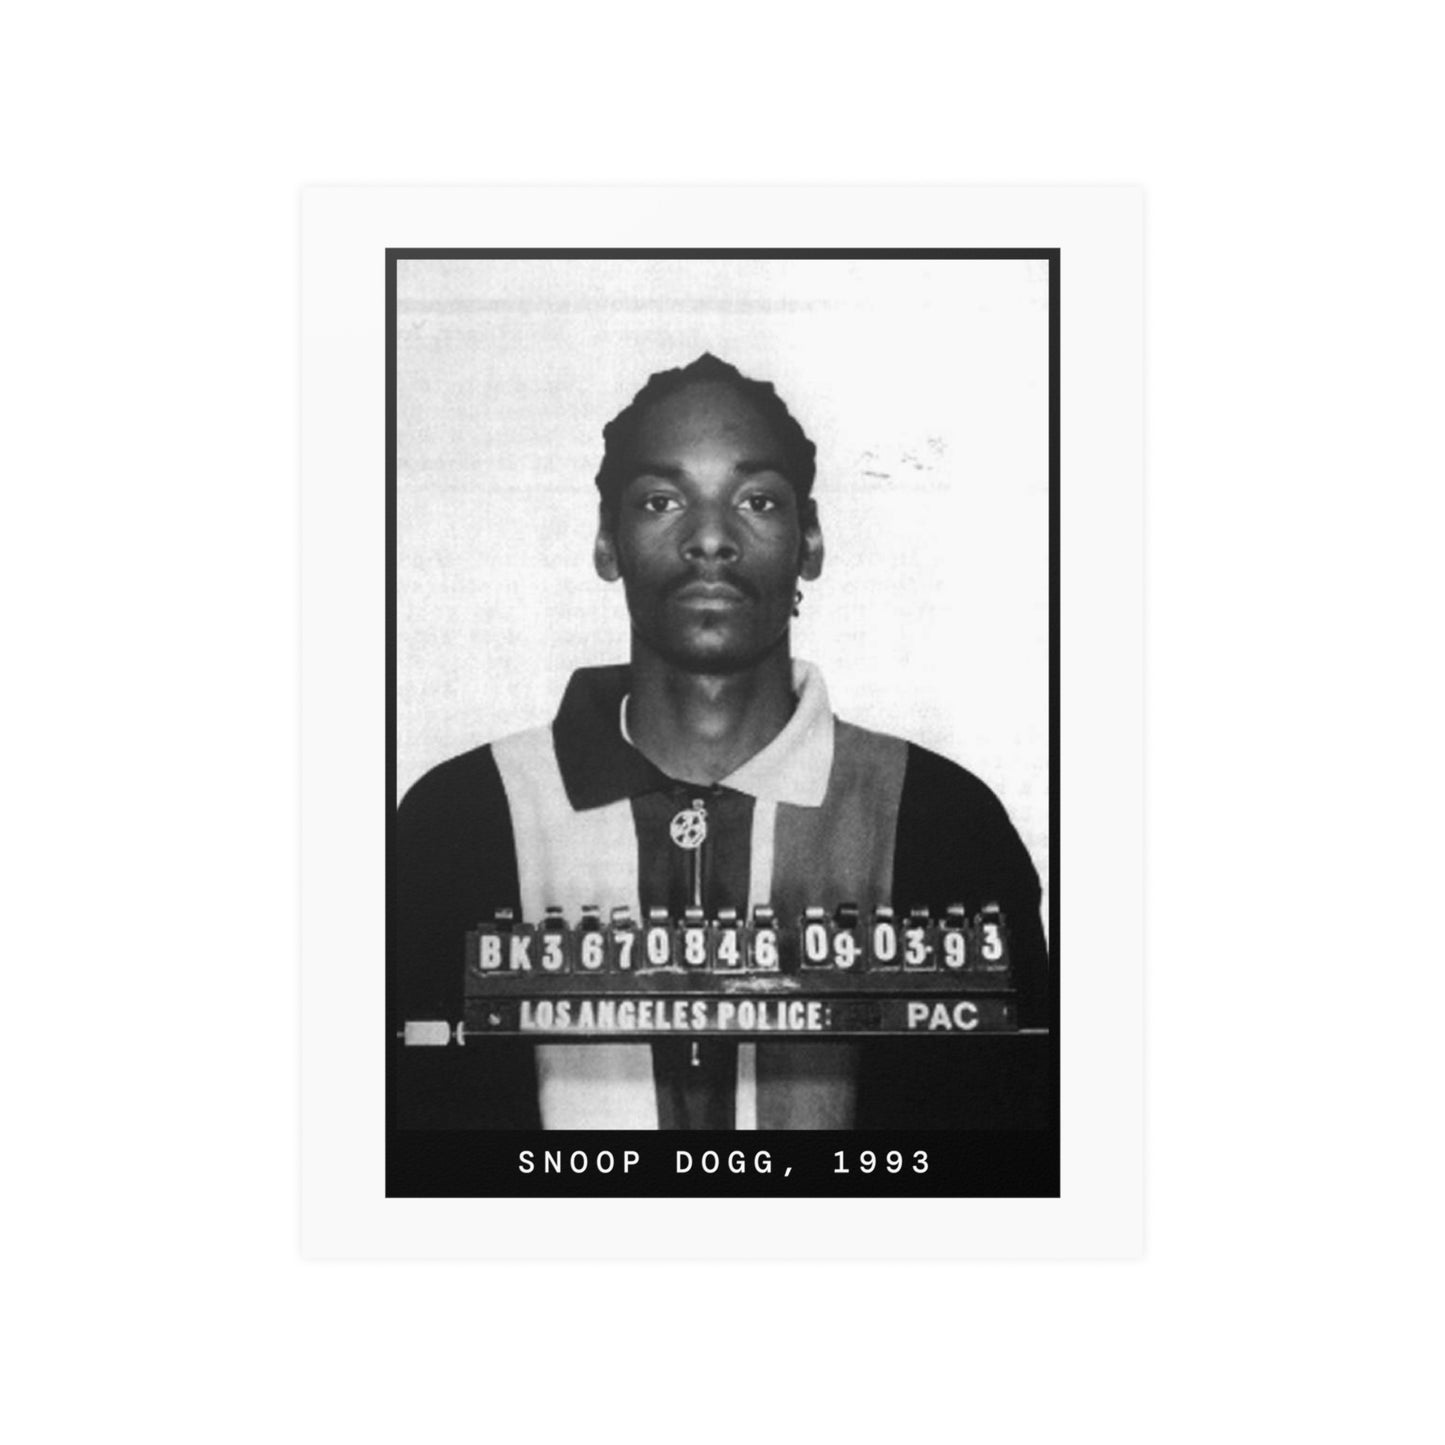 Snoop Dogg, 1993 Rapper Mugshot Poster